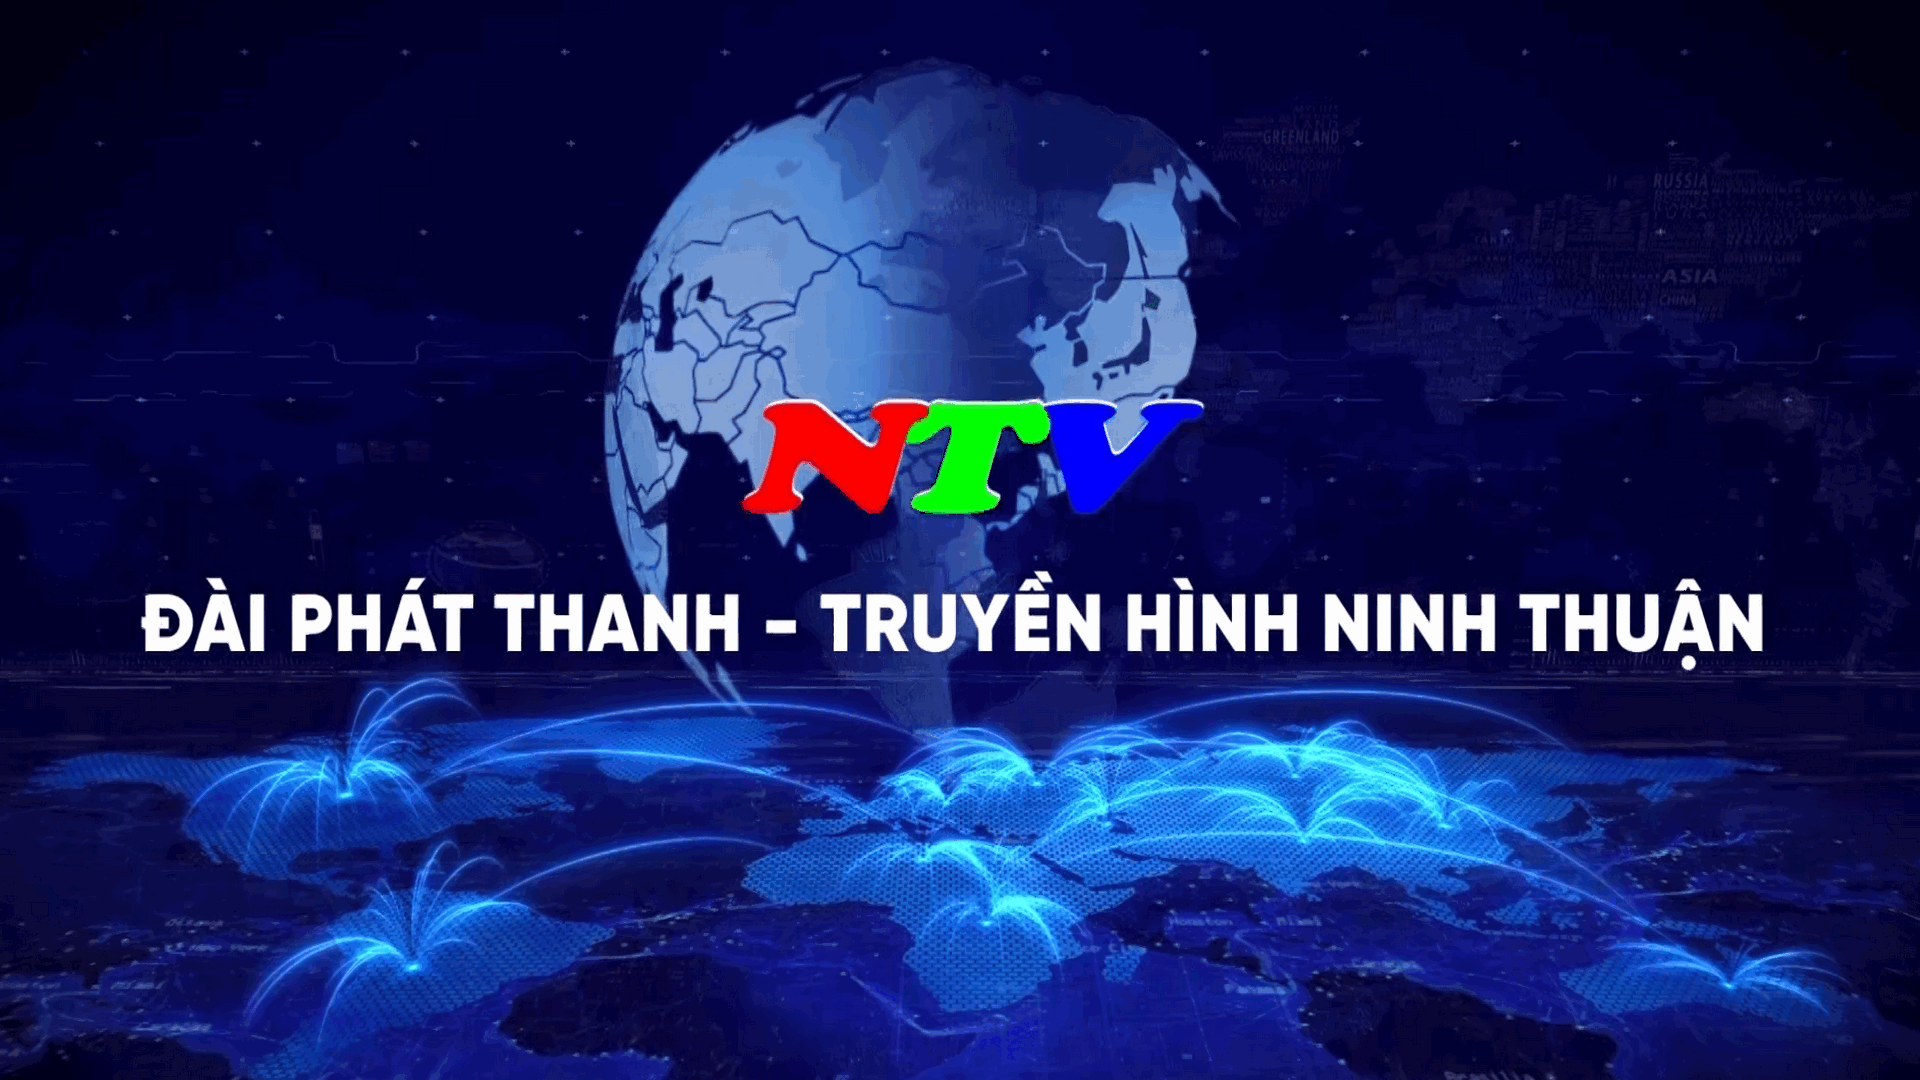 Tầm nhìn và những cơ hội tương lai của Nền tảng truyền hình số quốc gia -  Cổng thông tin điện tử Đài Truyền hình Việt Na...